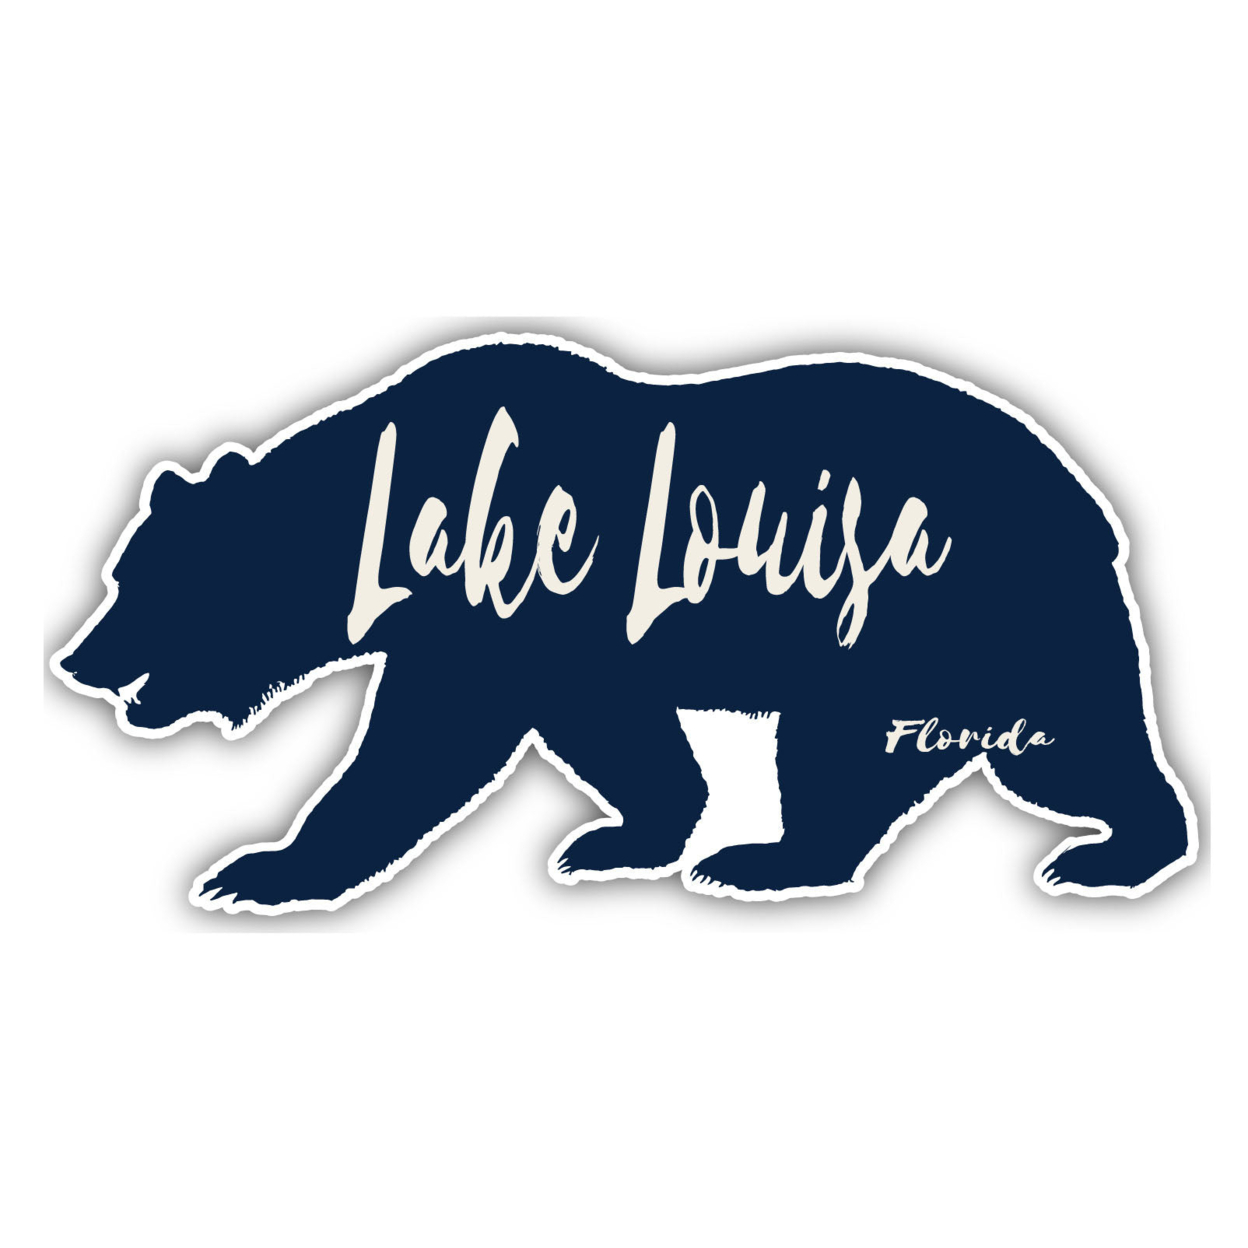 Lake Monroe Florida Souvenir Decorative Stickers (Choose Theme And Size) - 4-Inch, Bear